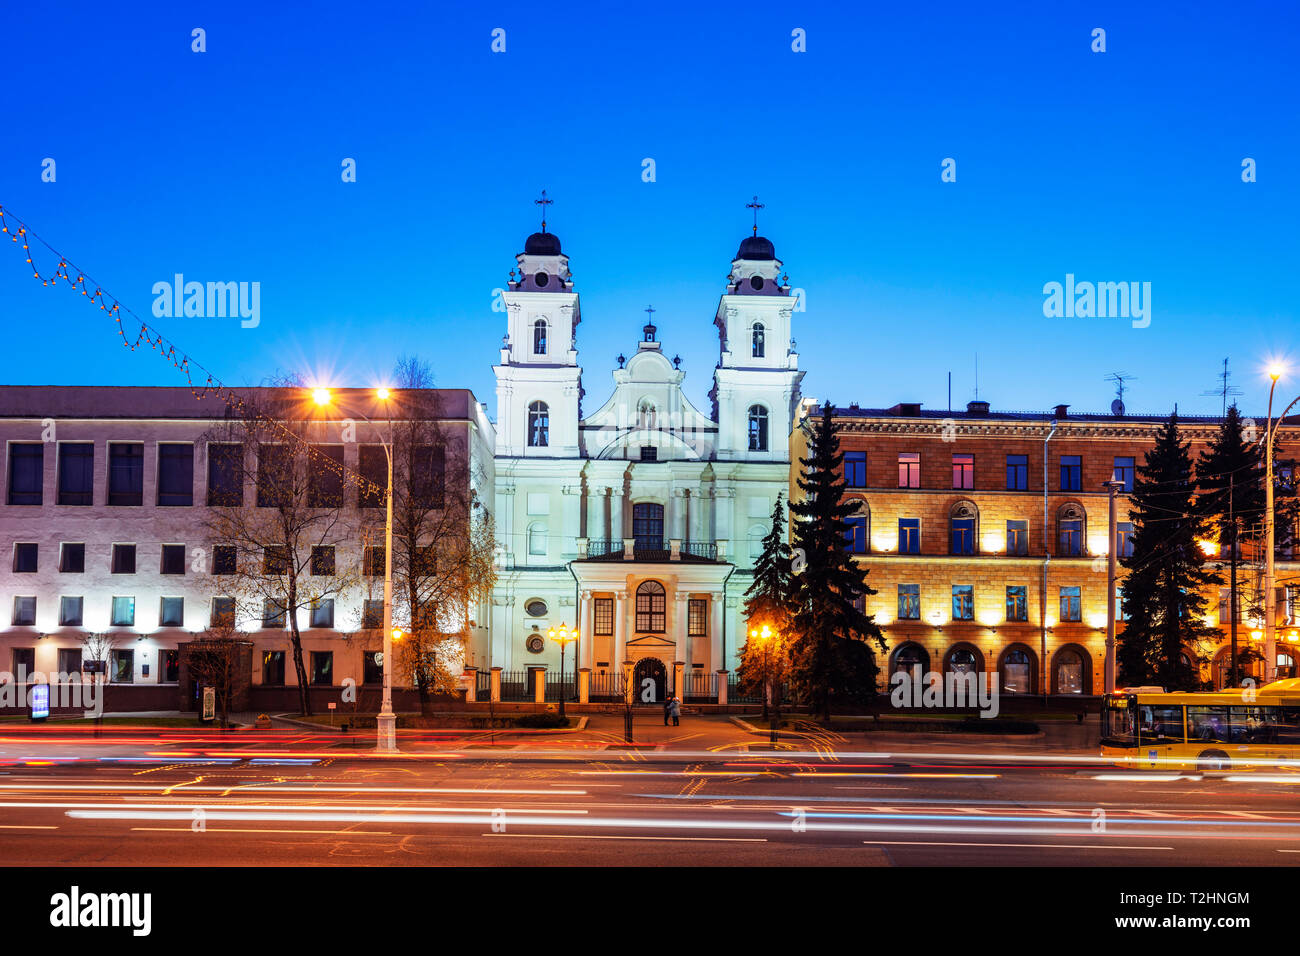 La cathédrale baroque de Saint Vierge Marie, Minsk, Belarus, l'Europe de l'Est Banque D'Images